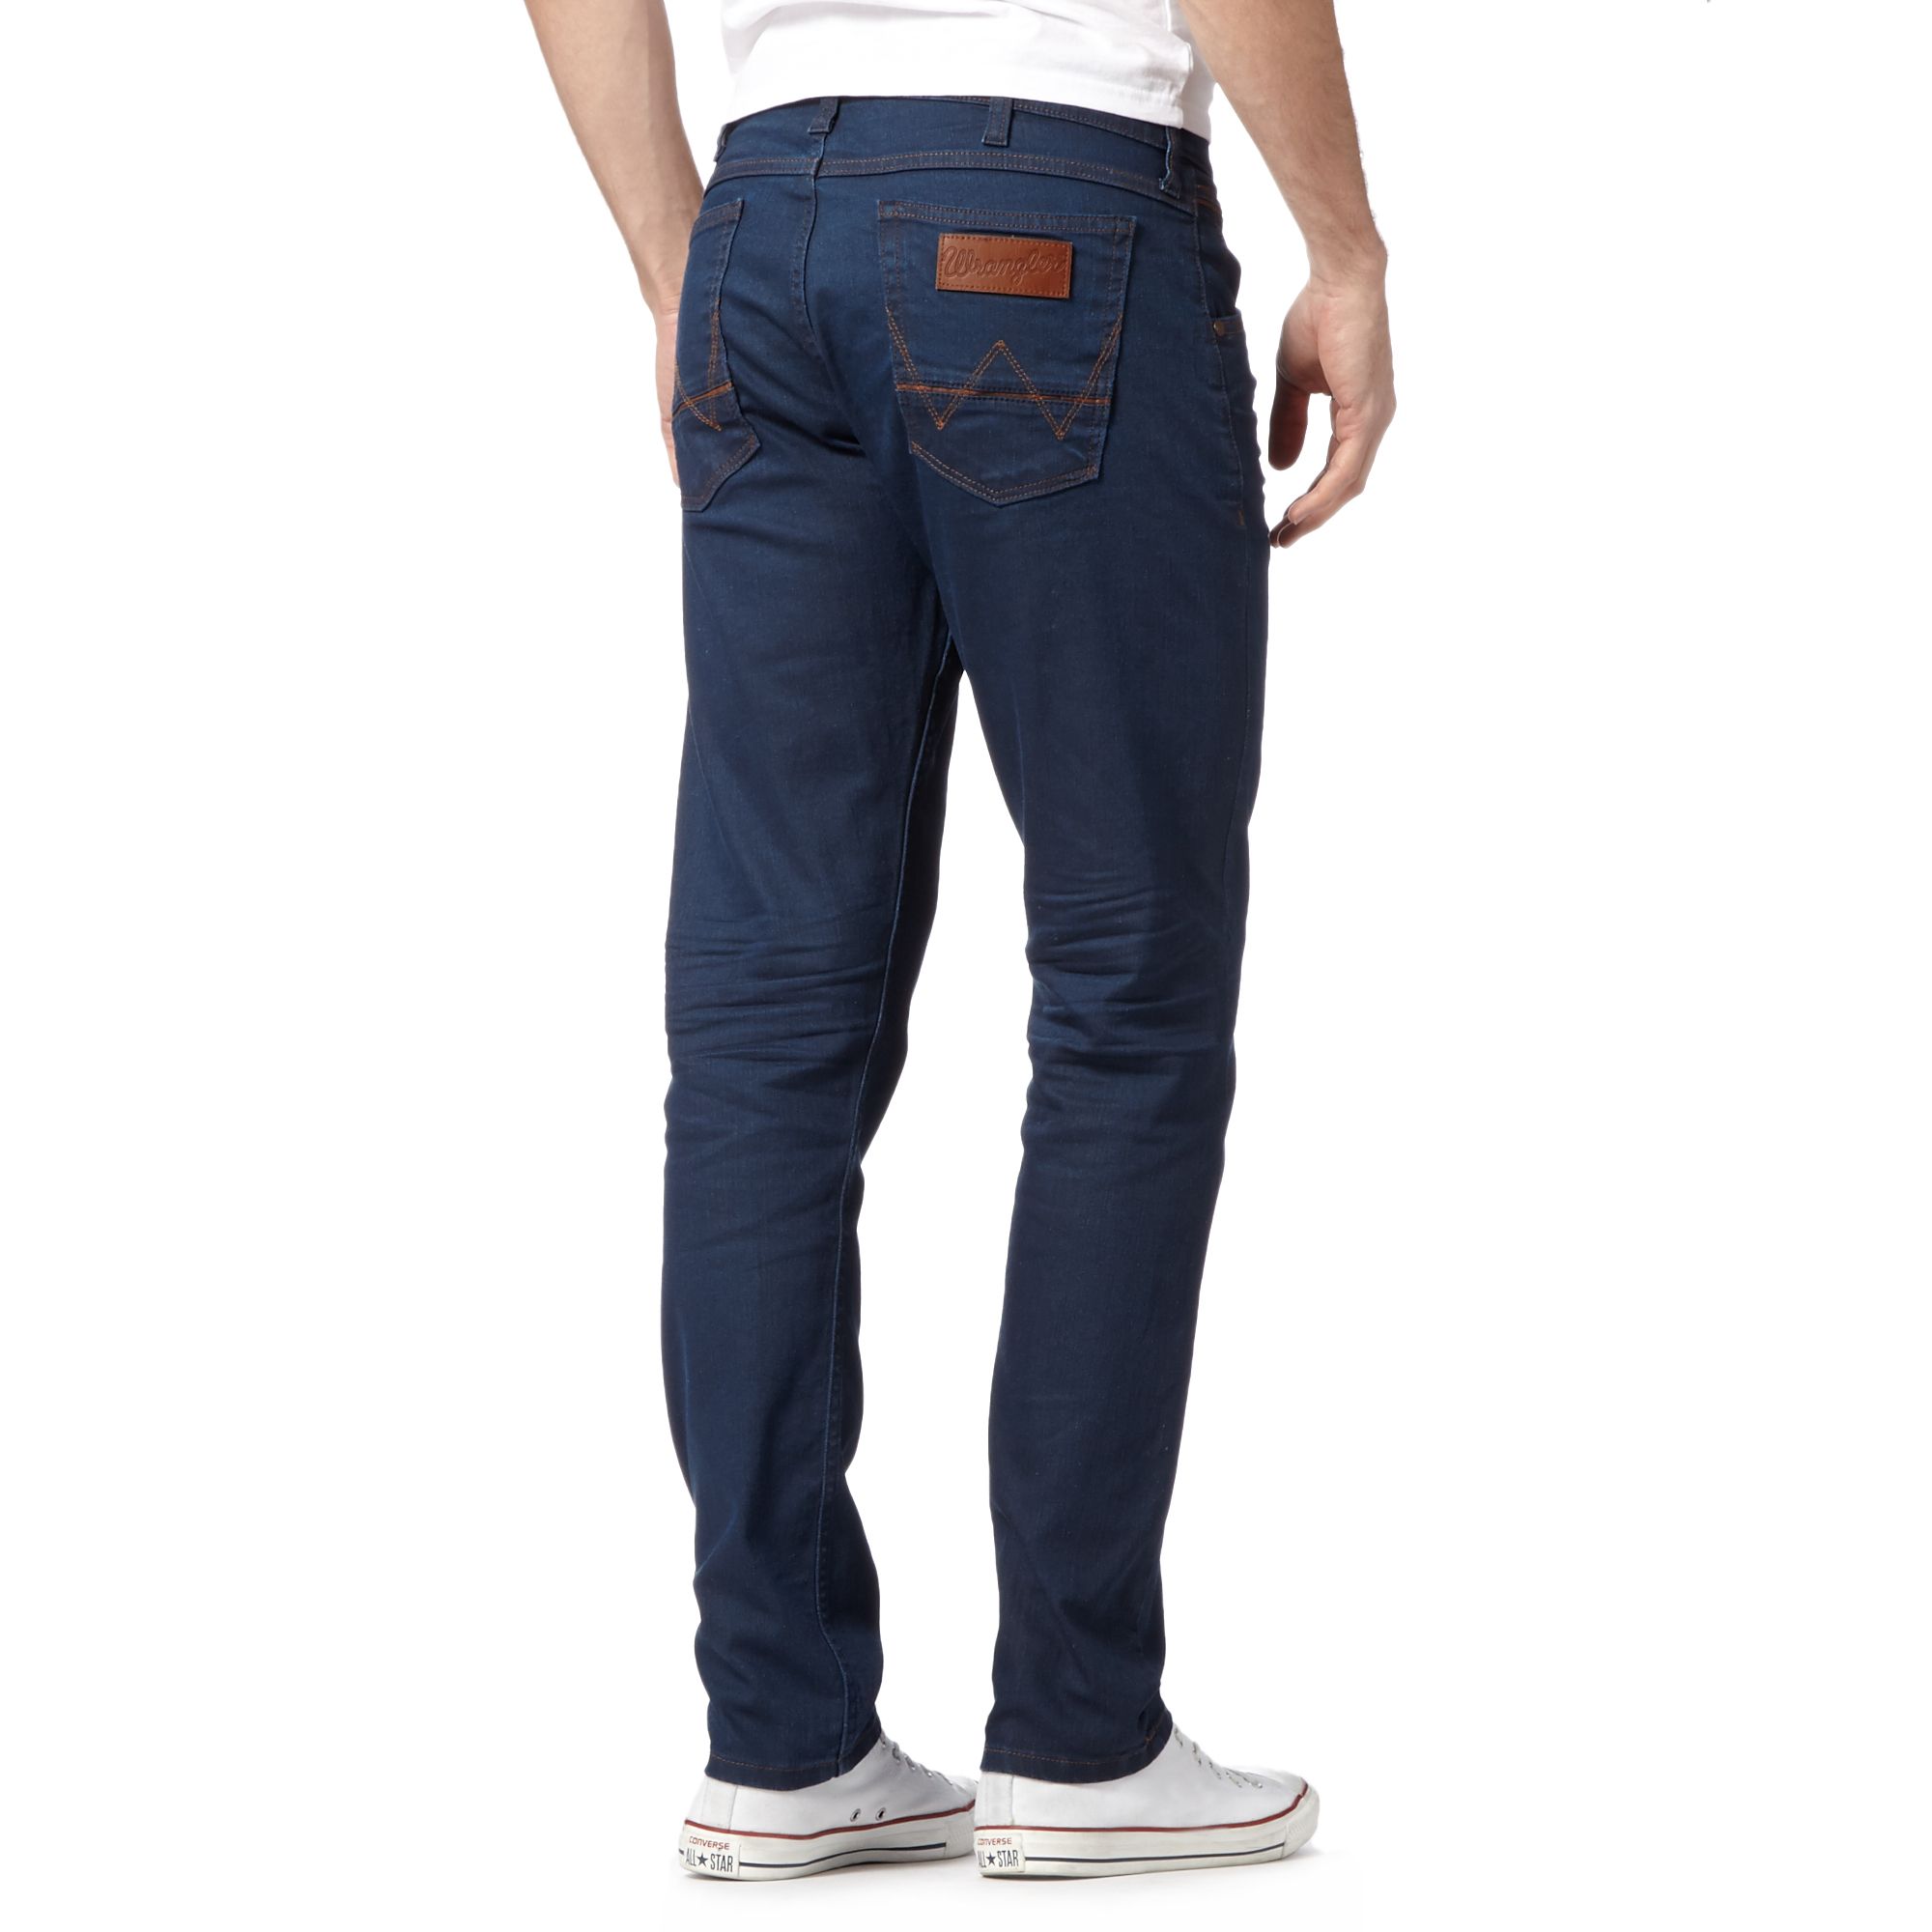 Wrangler Mens Colton Bait Blue Raw Tapered Leg Jeans From Debenhams | eBay